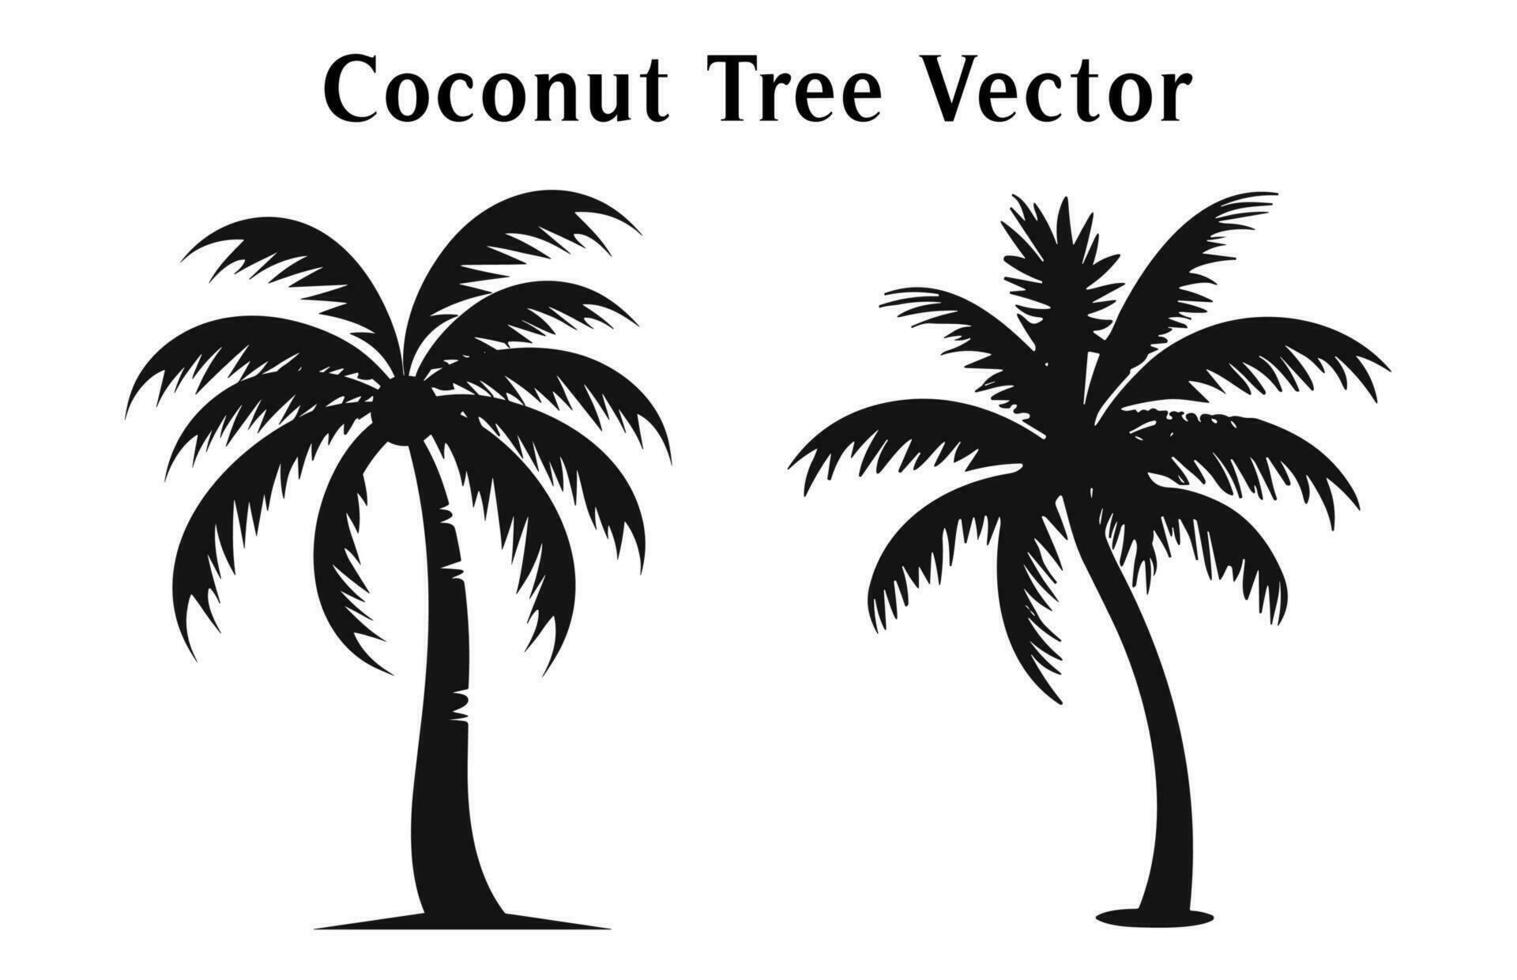 Coco arboles silueta vector conjunto aislado en blanco fondo, Coco árbol siluetas haz